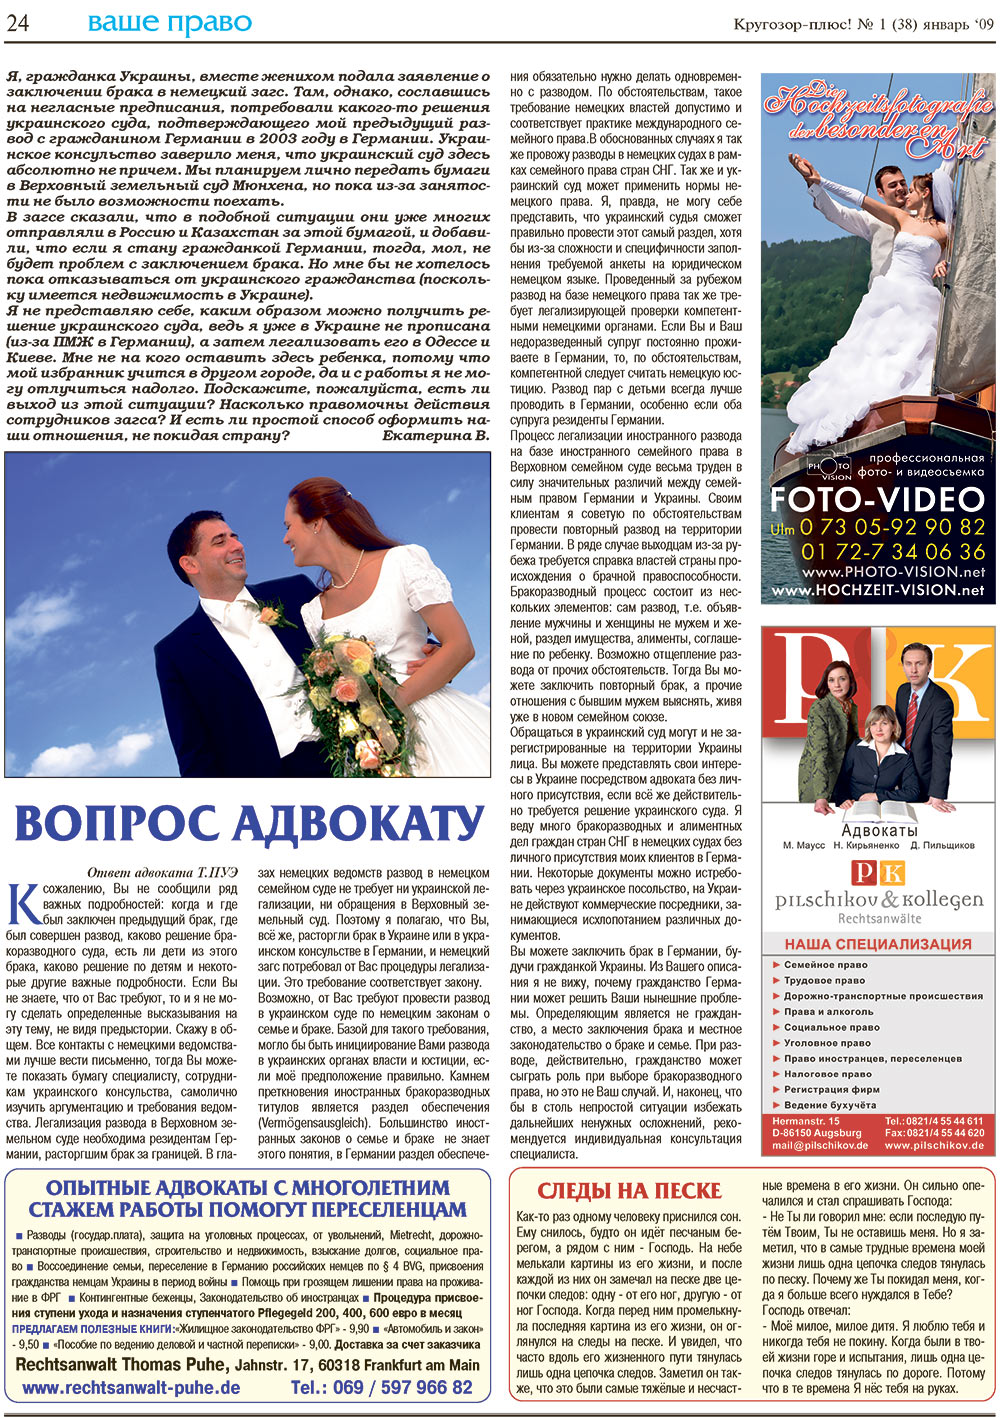 Кругозор плюс!, газета. 2009 №1 стр.24